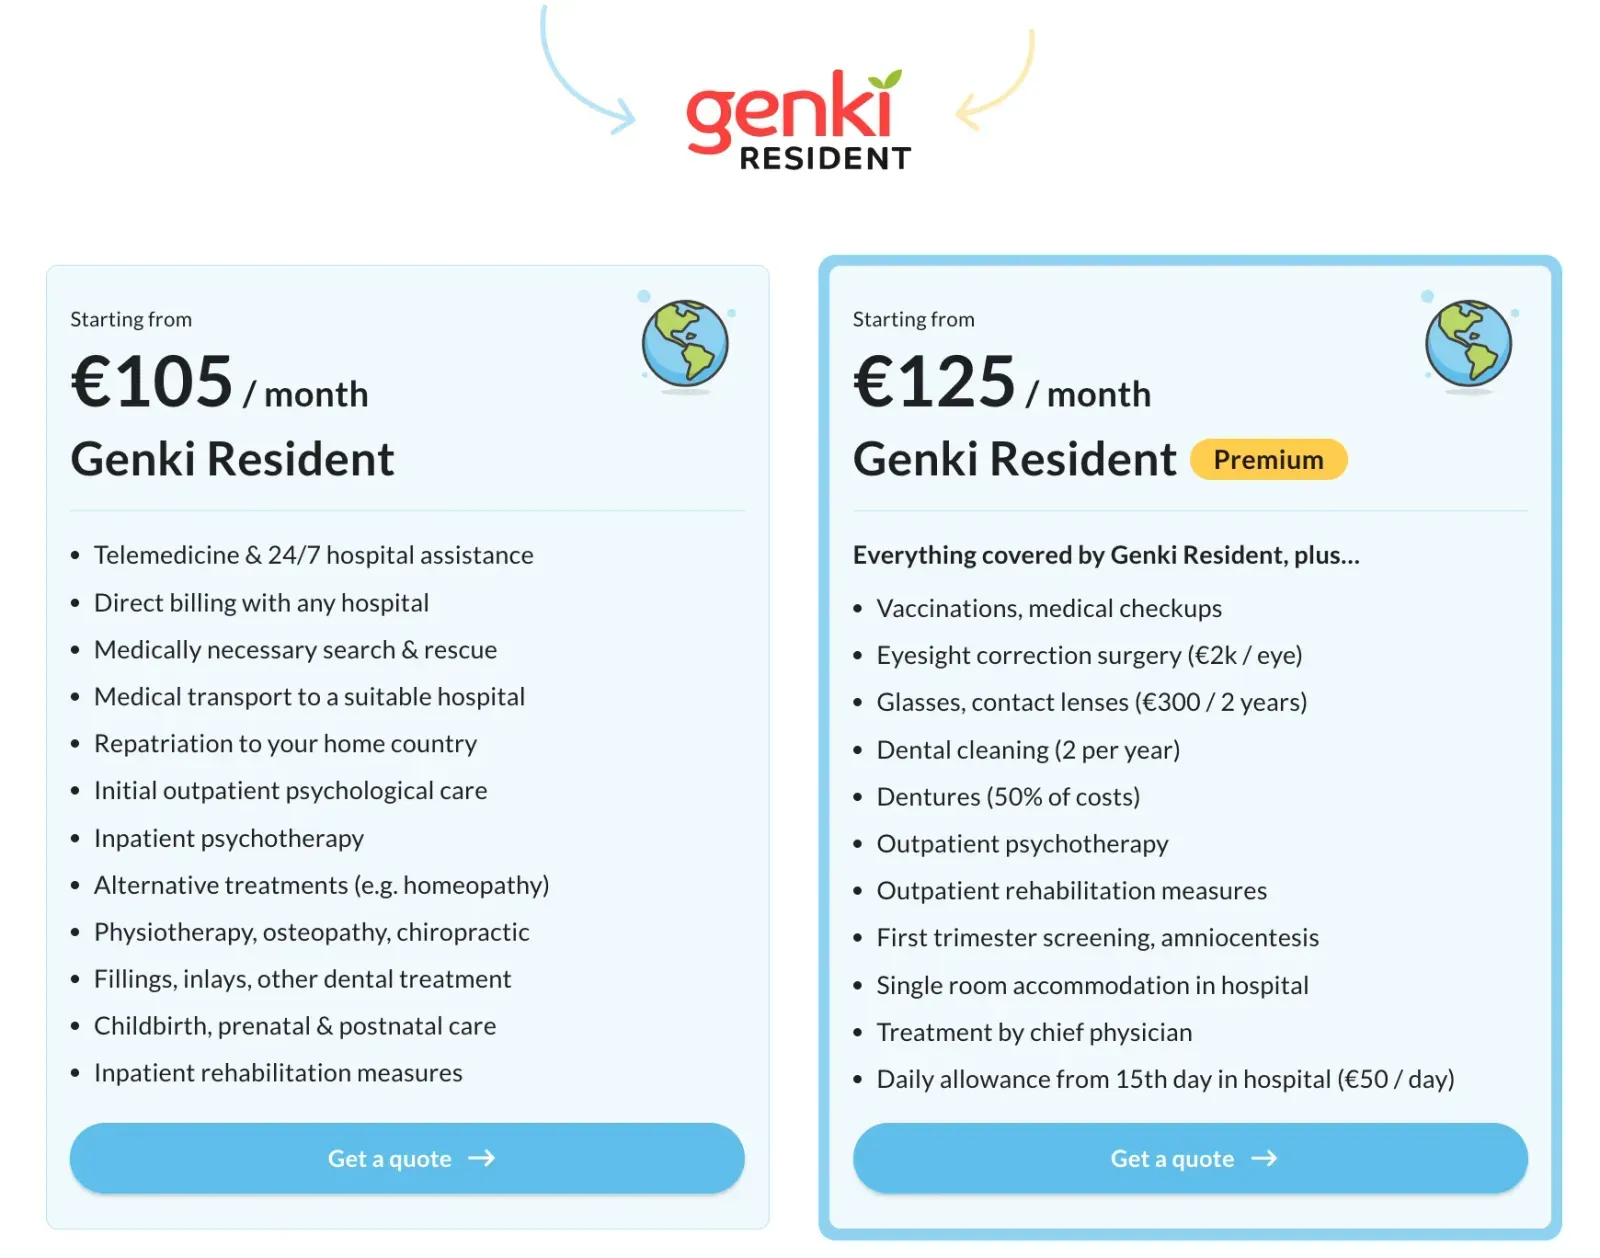 Genki Resident Pricing plans